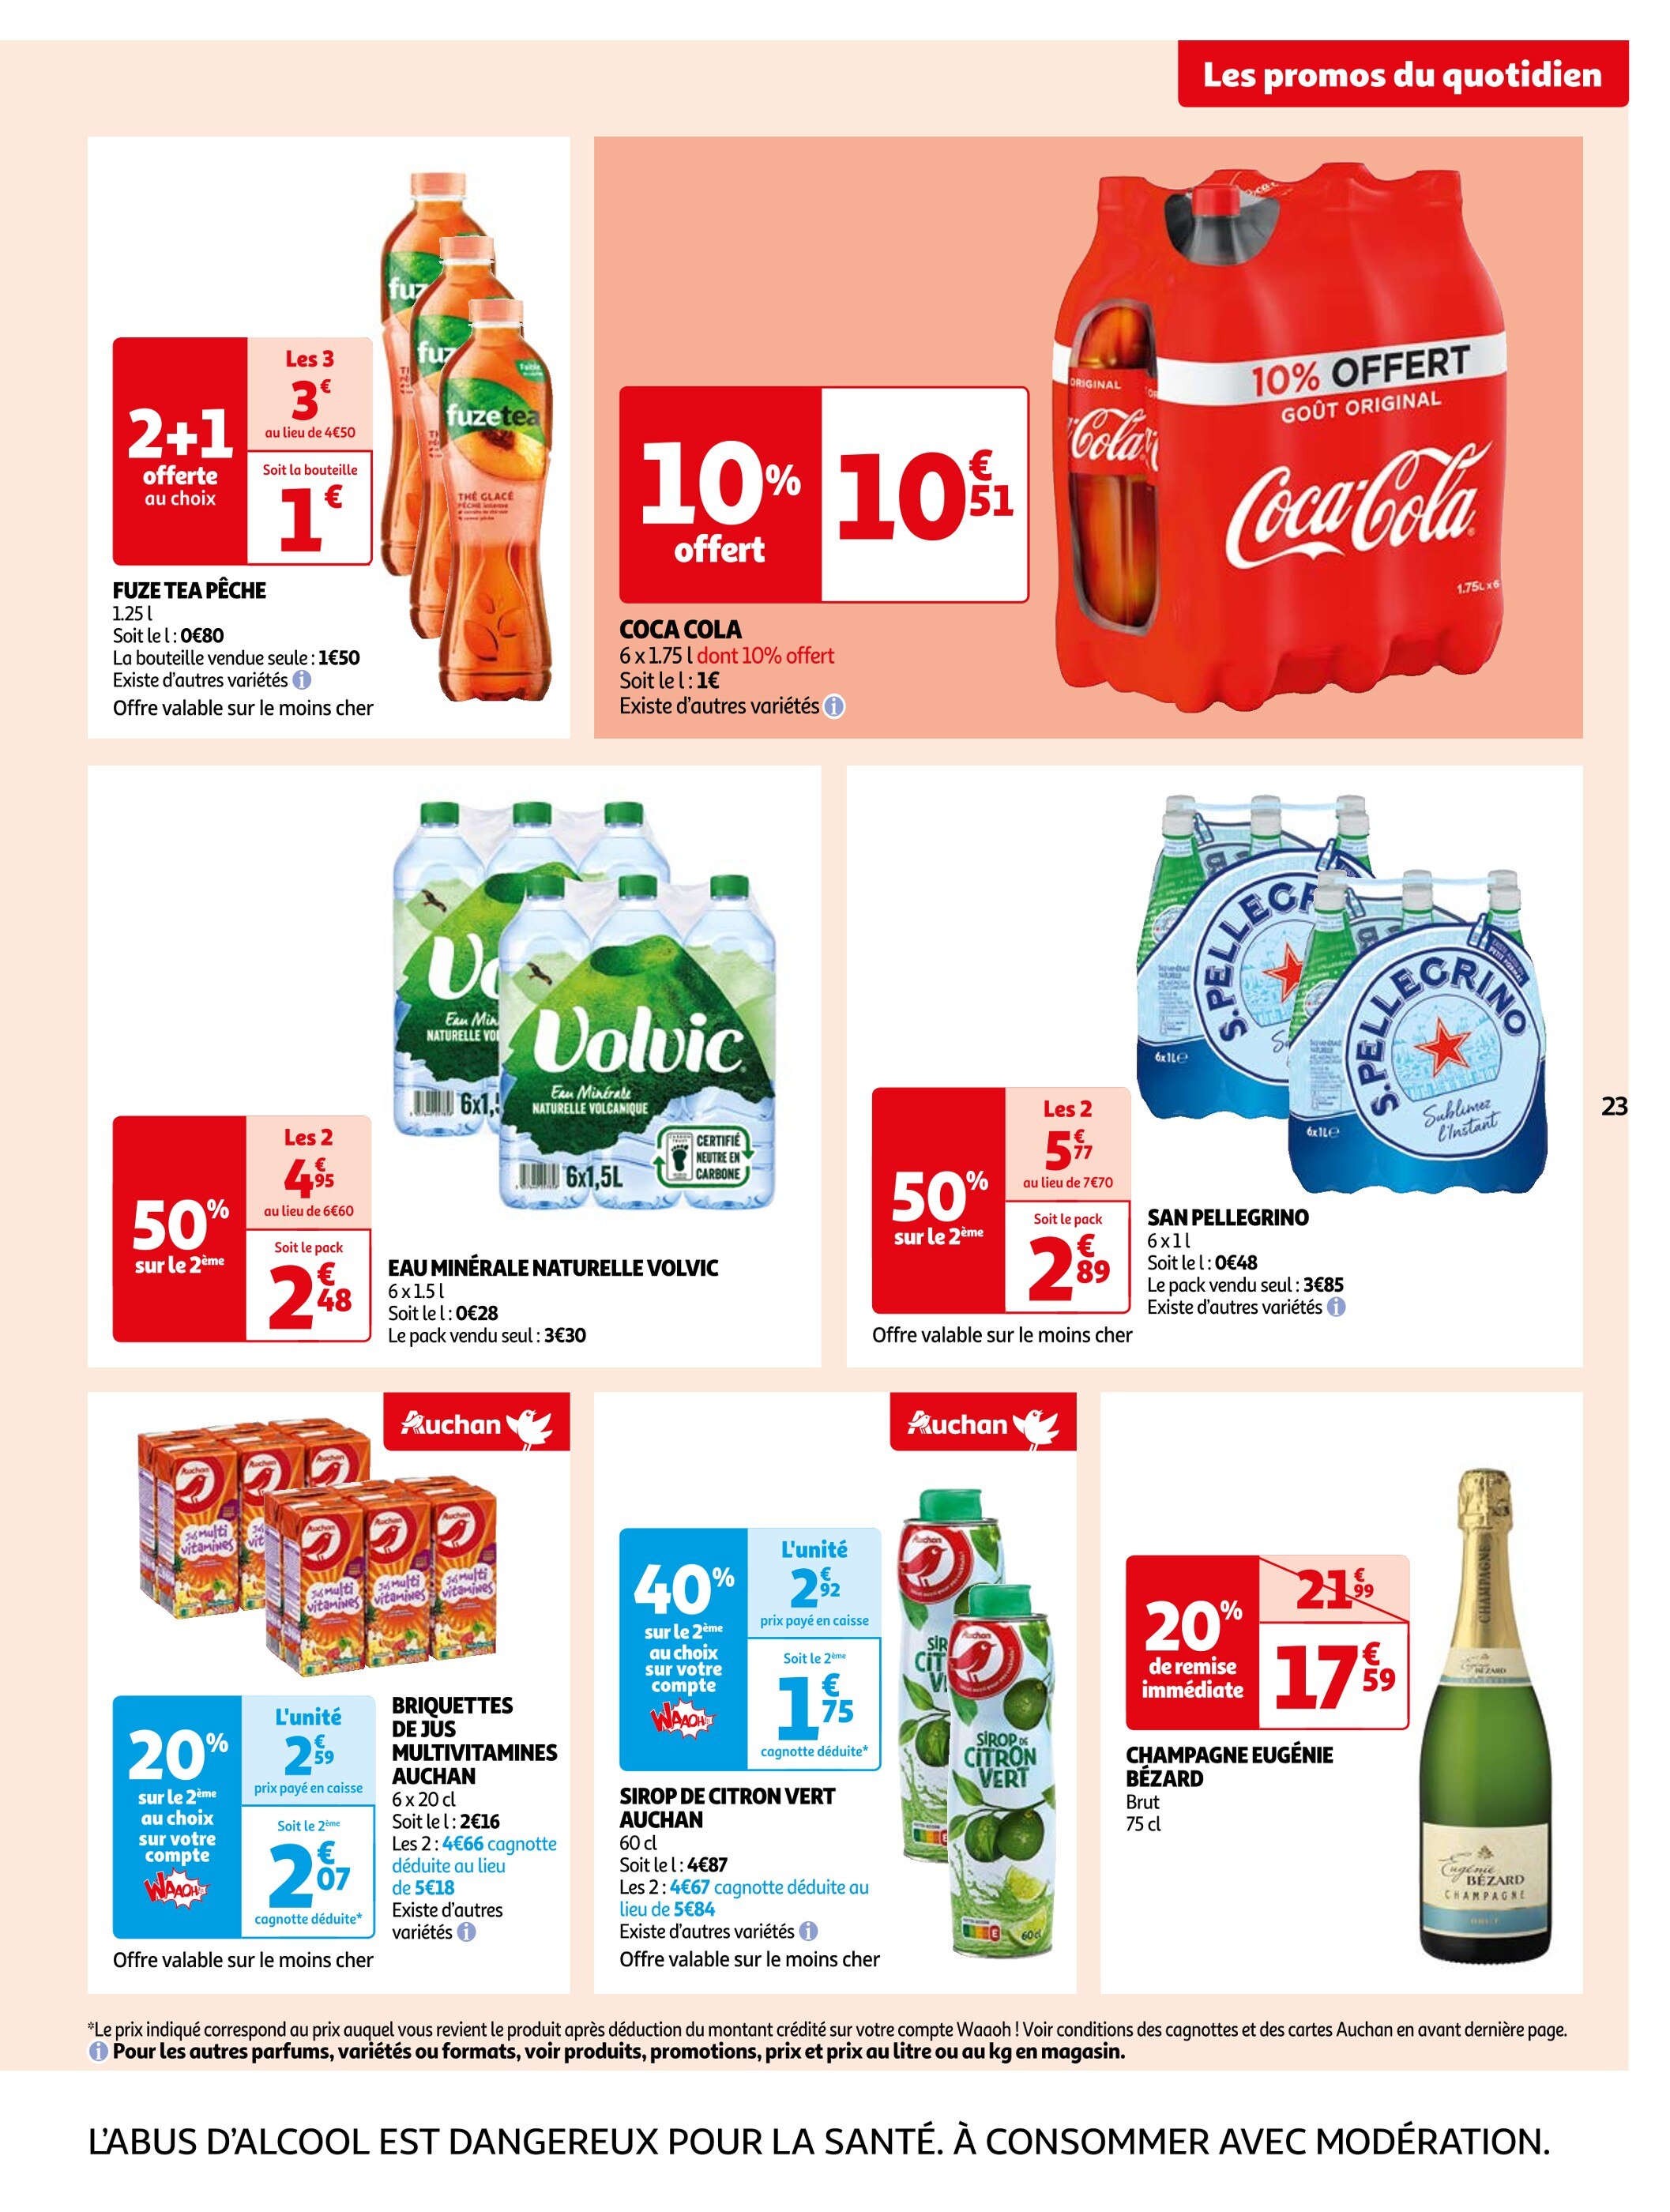 Promo 2+1 Offert Au Choix Sur La Marque Mr.min chez Auchan